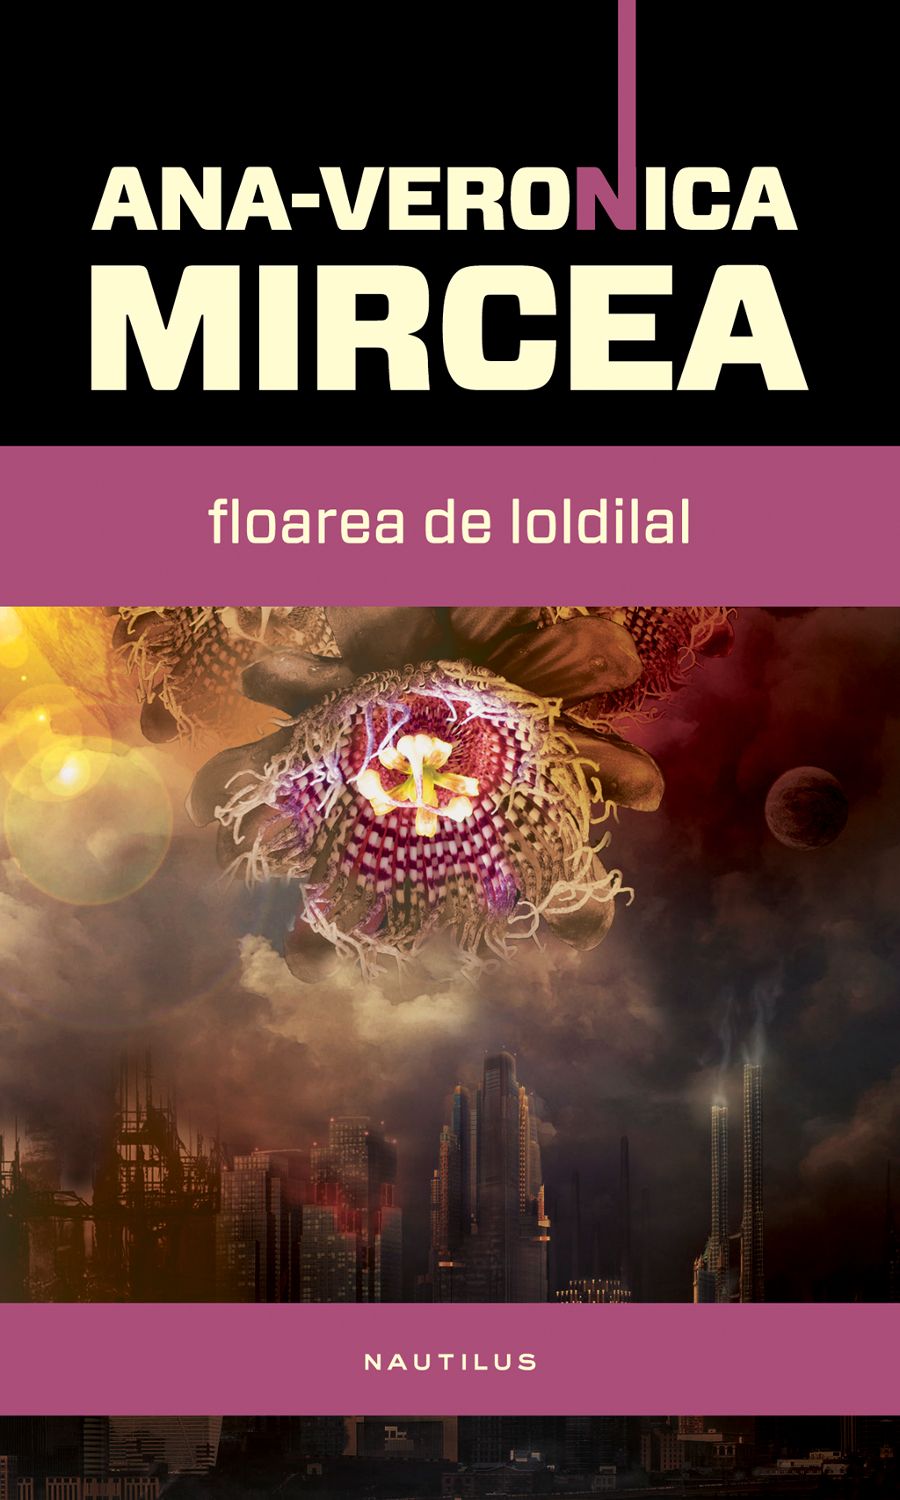 eBook Floarea de loldilal - Ana-Veronica Mircea